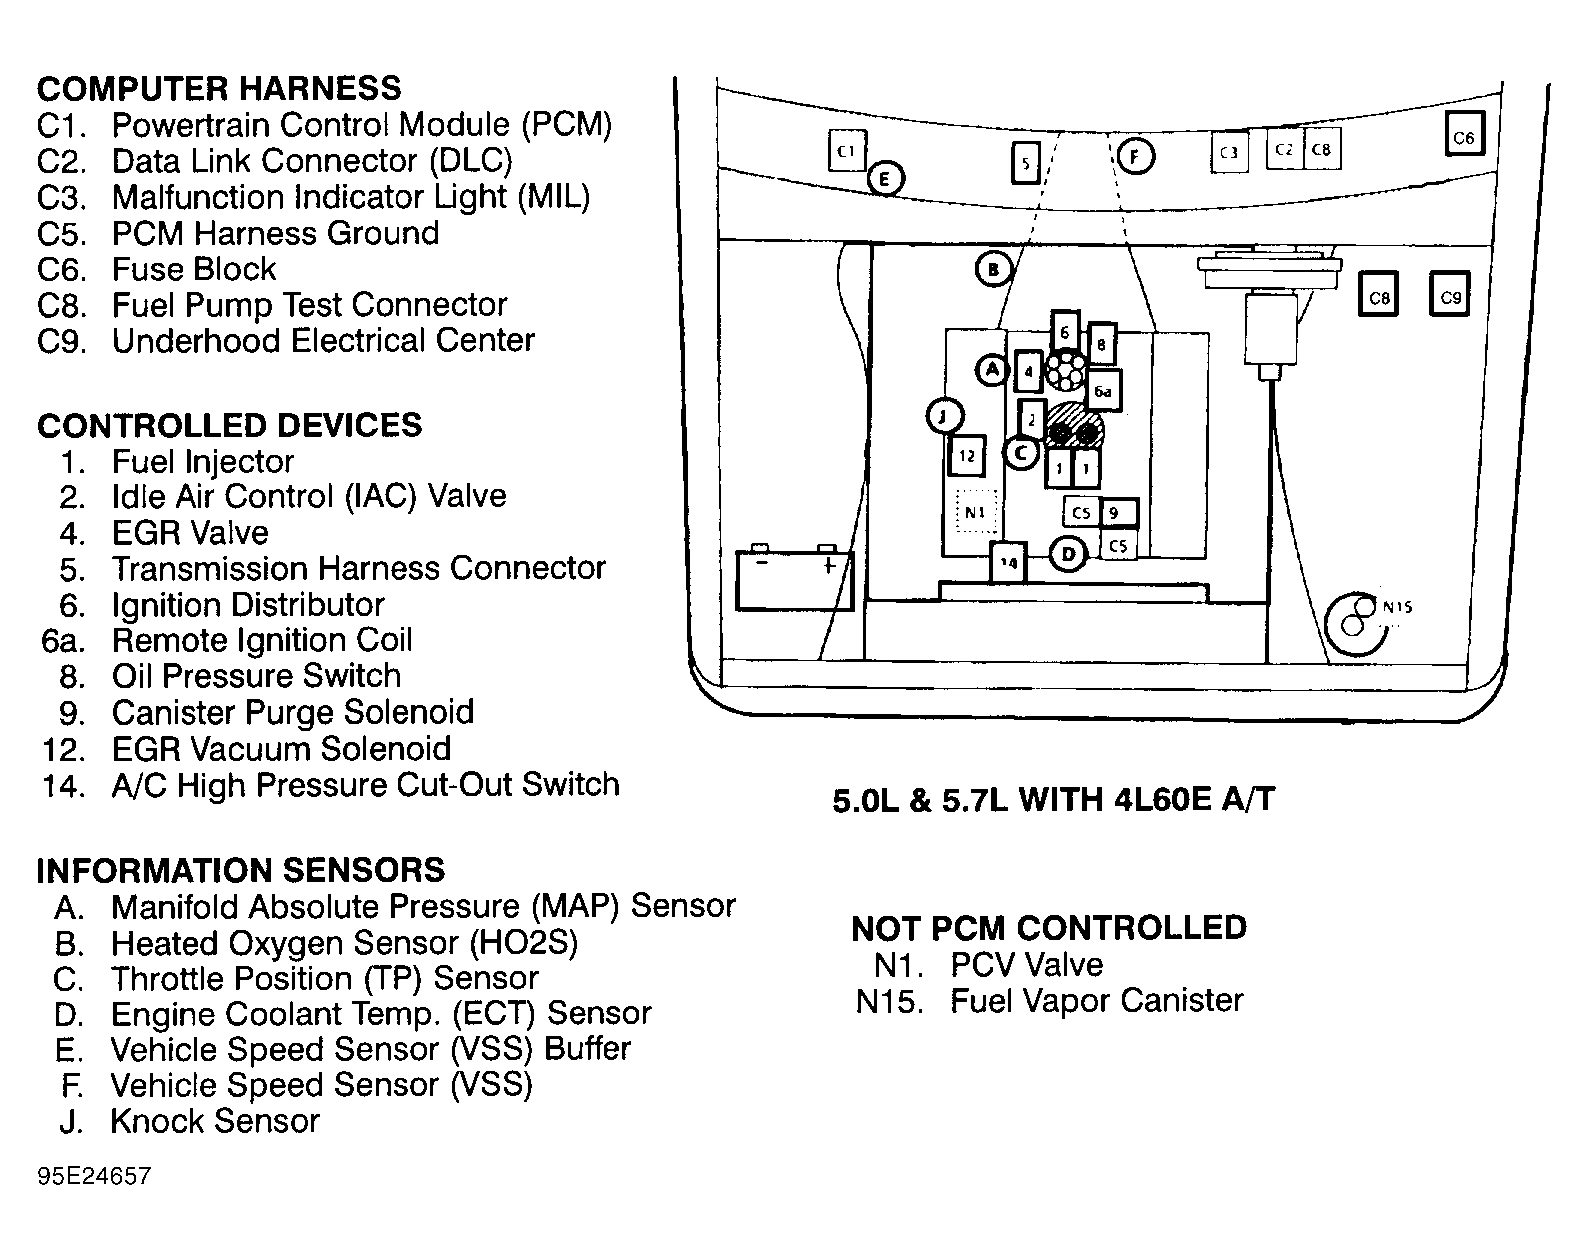 GMC Suburban C1500 1995 - Component Locations -  Engine Compartment (5.0L & 5.7L W/4L60E A/T)